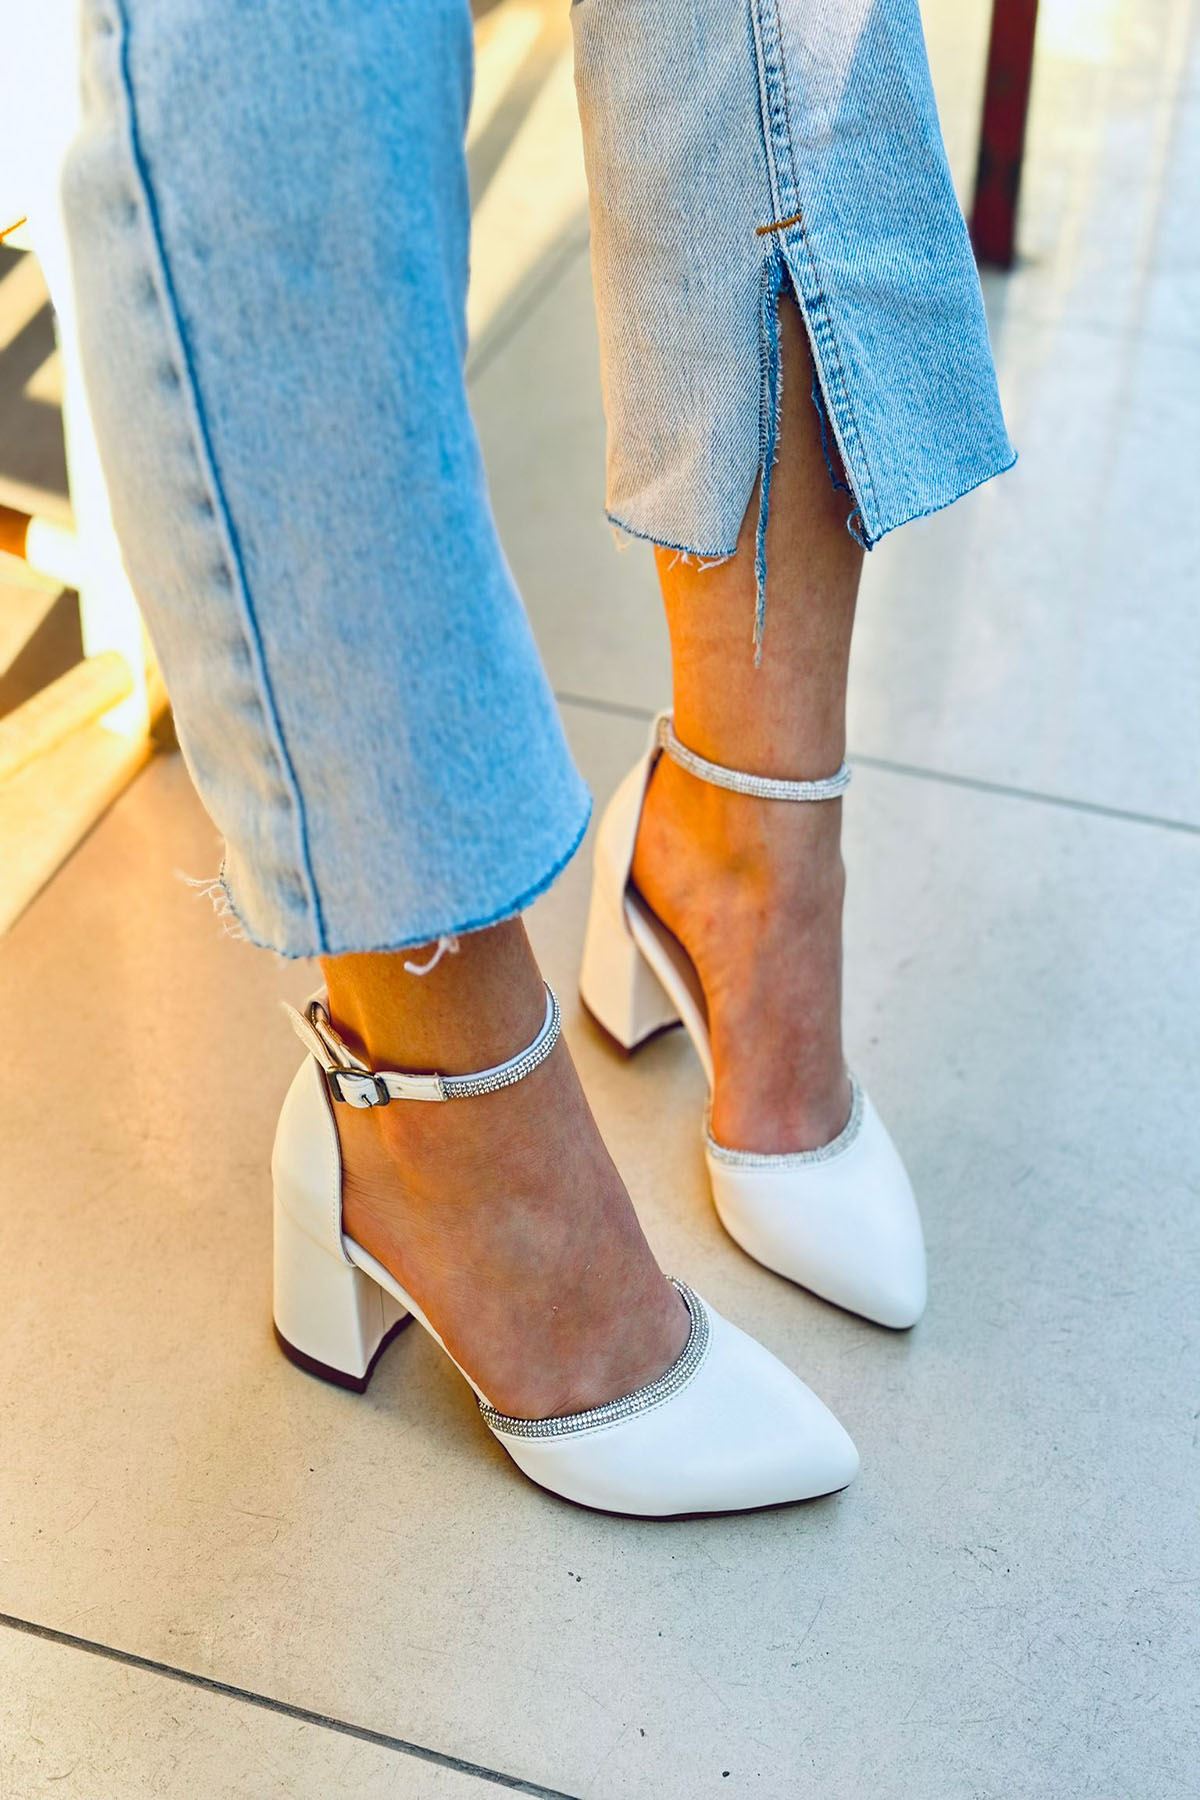 Mida Shoes Y148 Beyaz Deri Taşlı Kadın Topuklu Ayakkabı